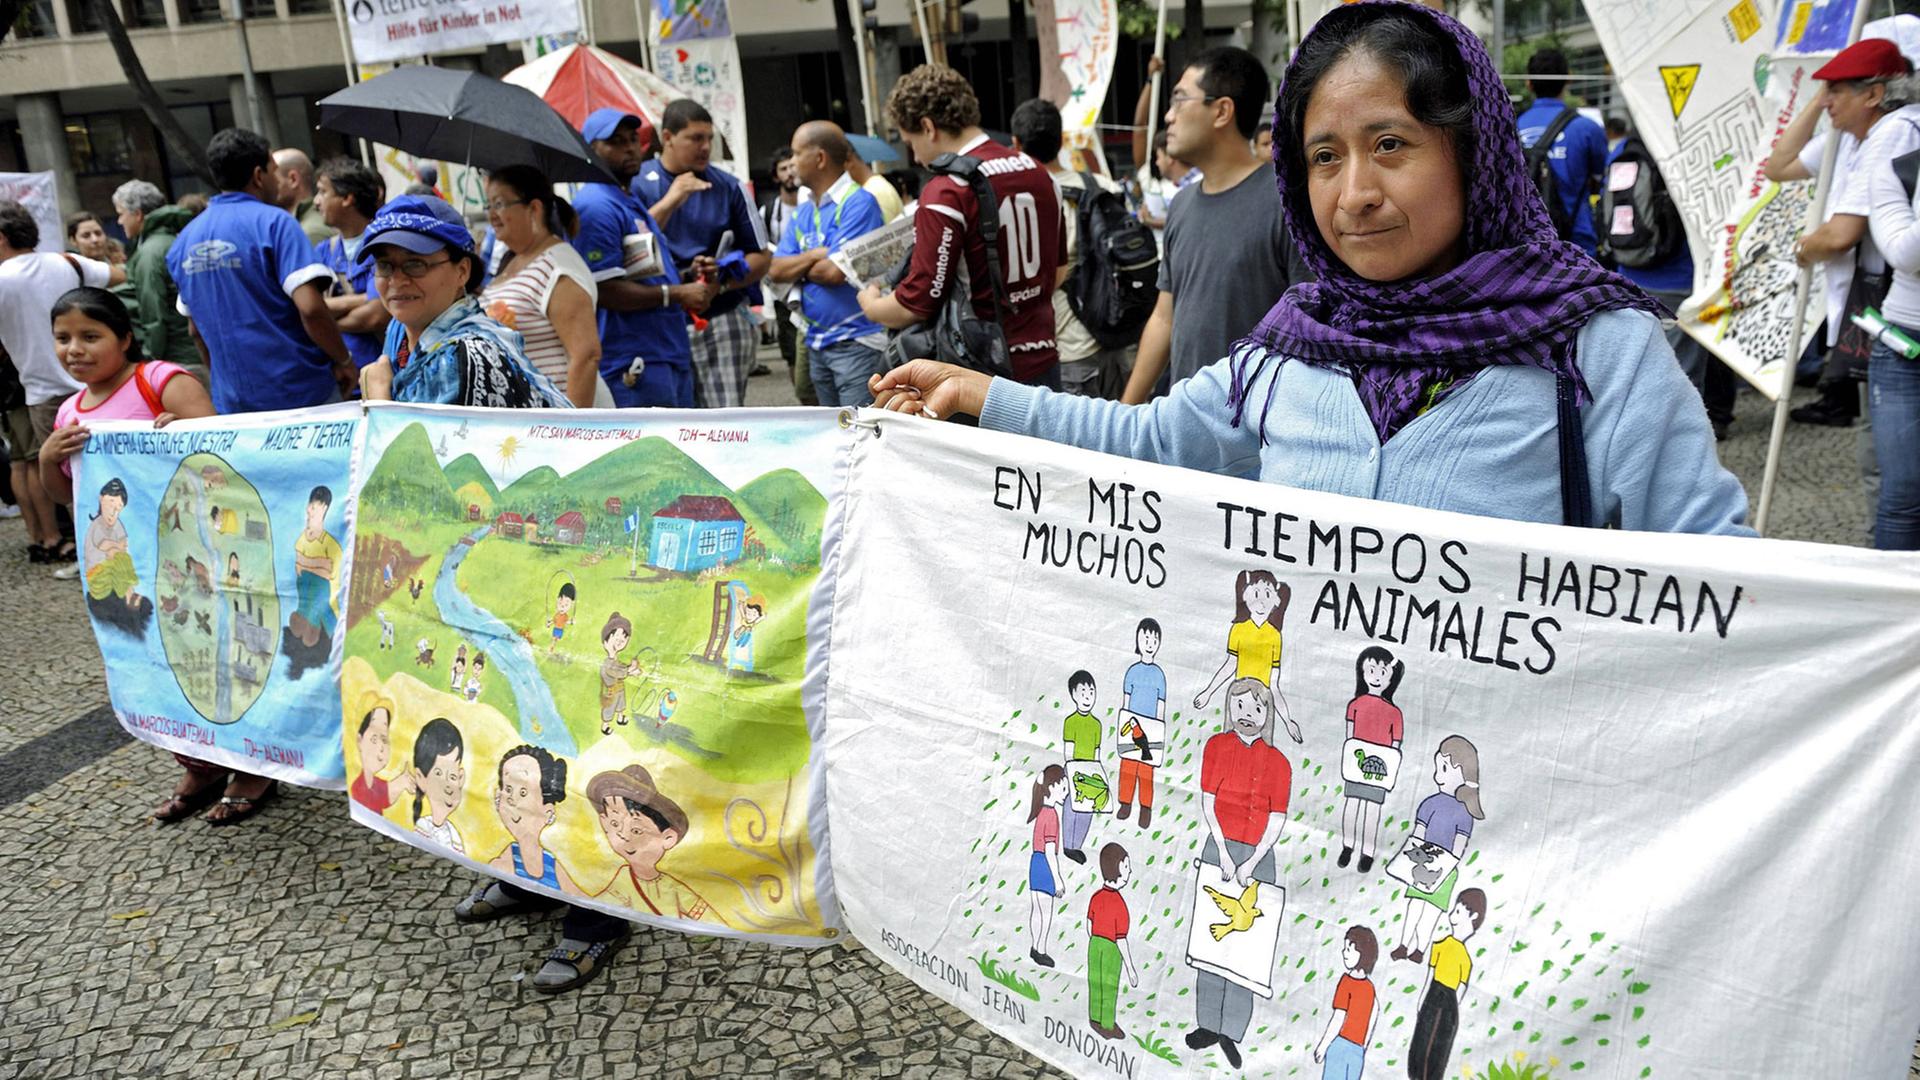 Aktivisten demonstrieren beim Rio-Gipfel 2012 für das von der Lebensweise der Indigenen inspirierte Konzept des "Buen Vivir", des "Guten Lebens".